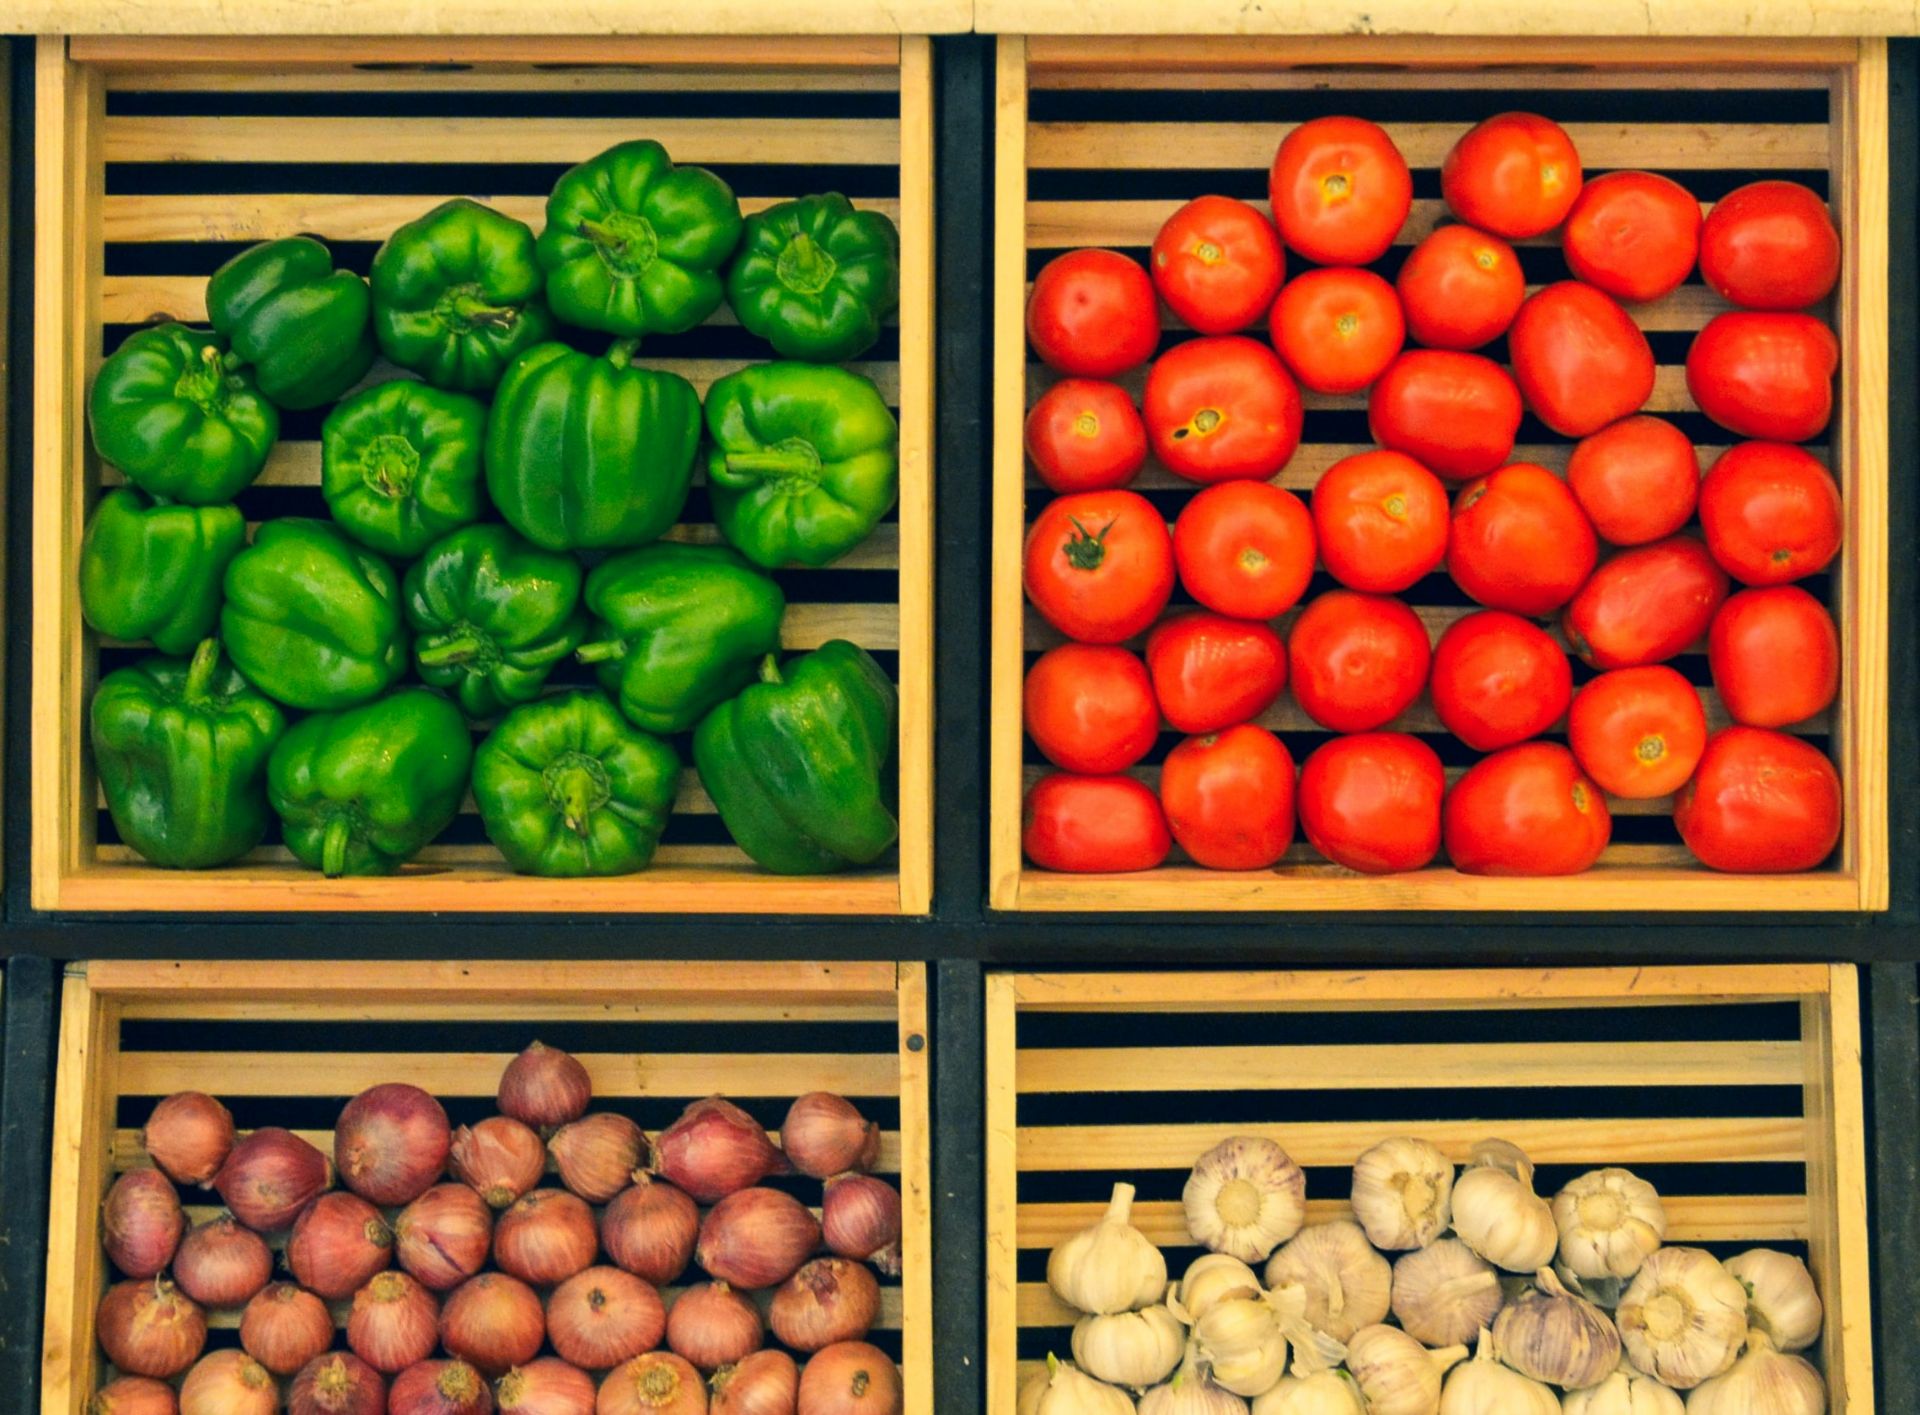 Marea Britanie: fructe şi legume raţionalizate în supermarketuri